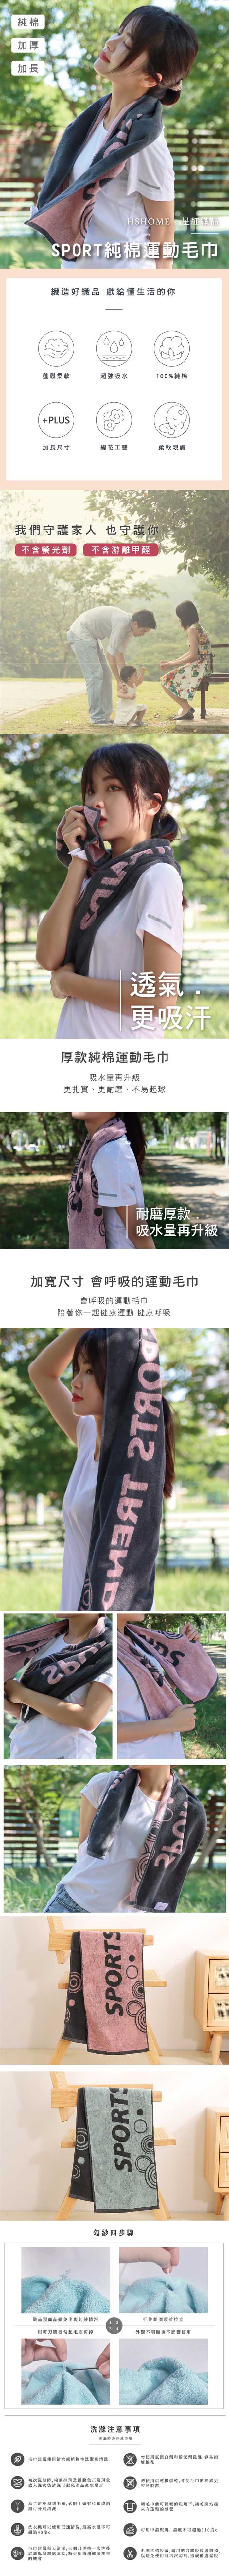 星紅織品 SPORT運動加厚加長版運動毛巾-8入(粉色/綠色